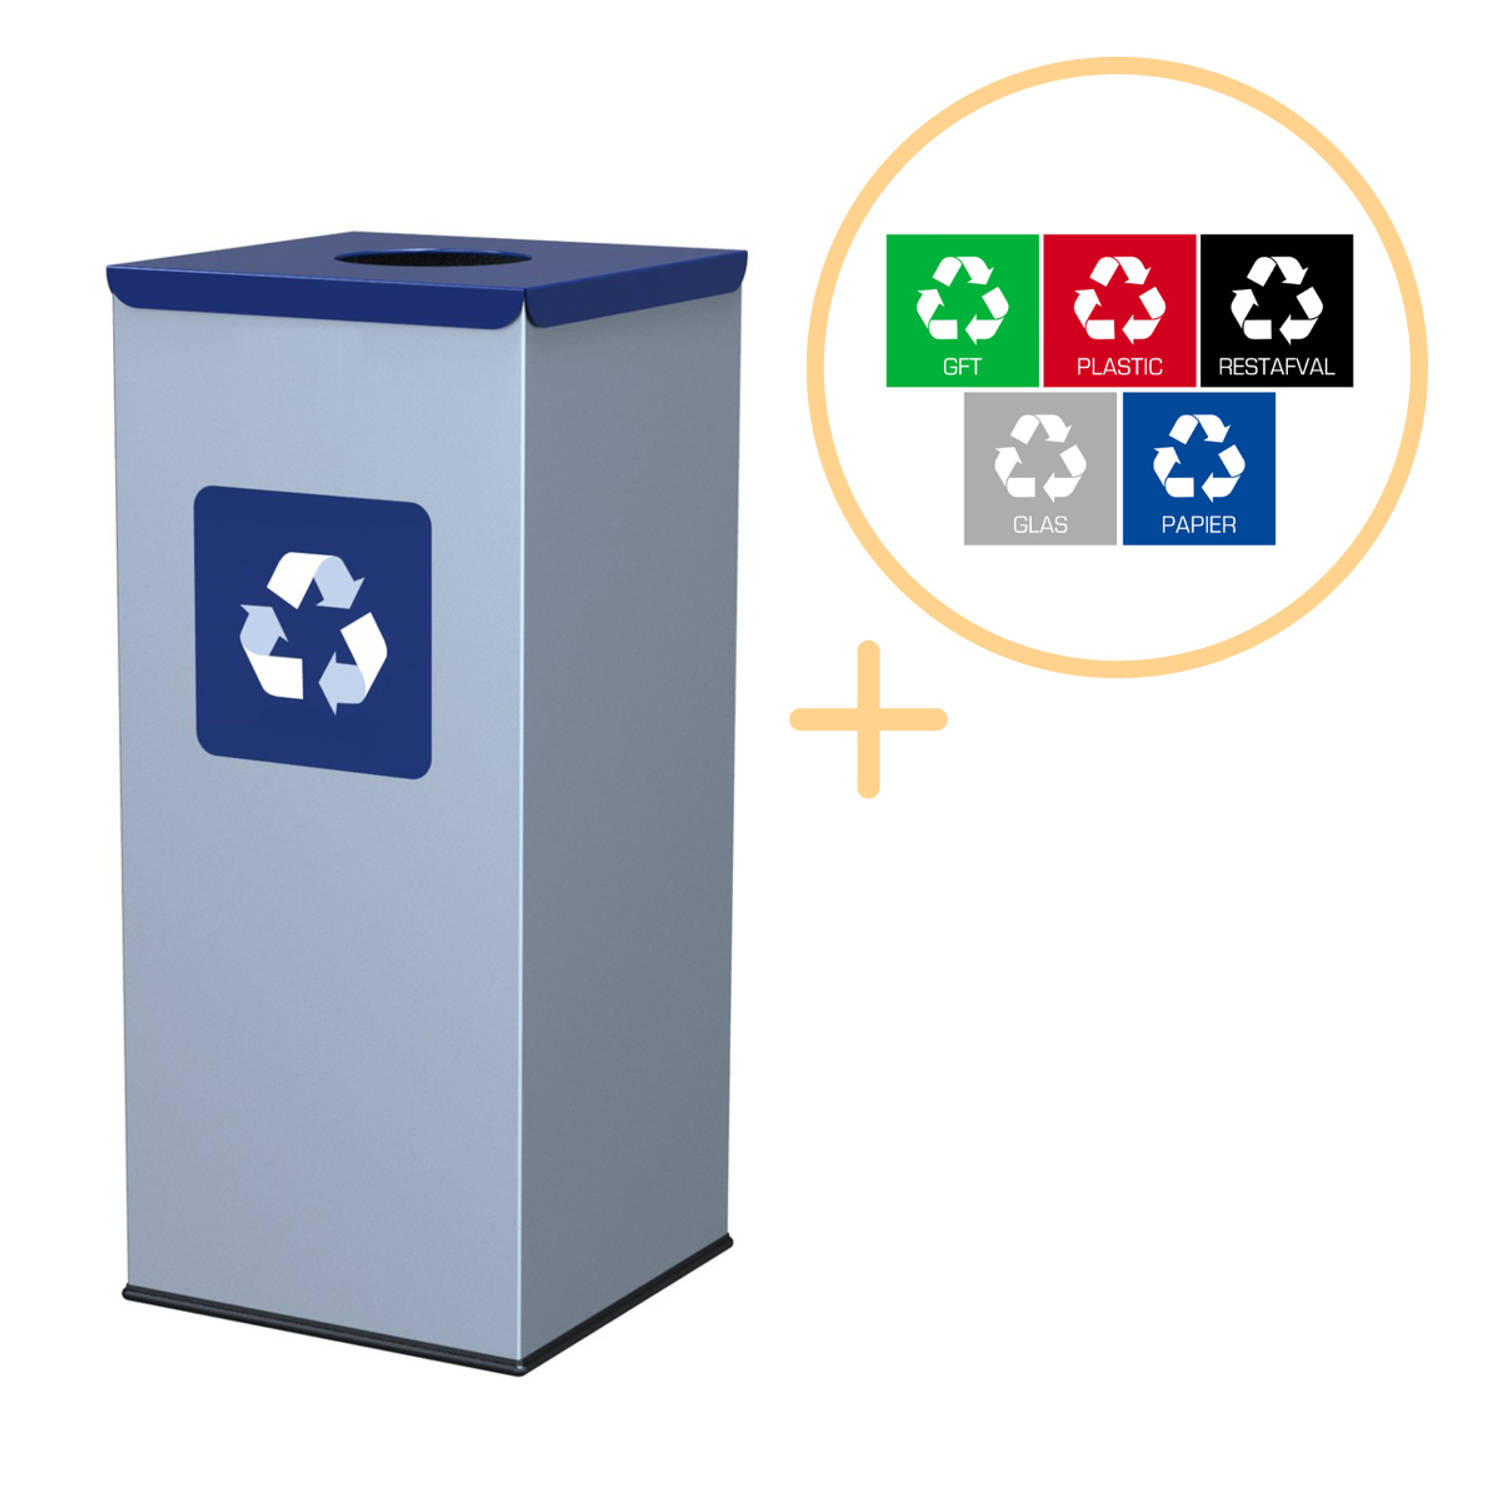 Alda Eco Square Bin, Prullenbak - 60L - Grijs/Blauw - Afvalscheiding Prullenbakken - Gemakkelijk Afval Scheiden – Recyclen - Afvalemmer - Vuilnisbak voor huishouden en kantoor - Af